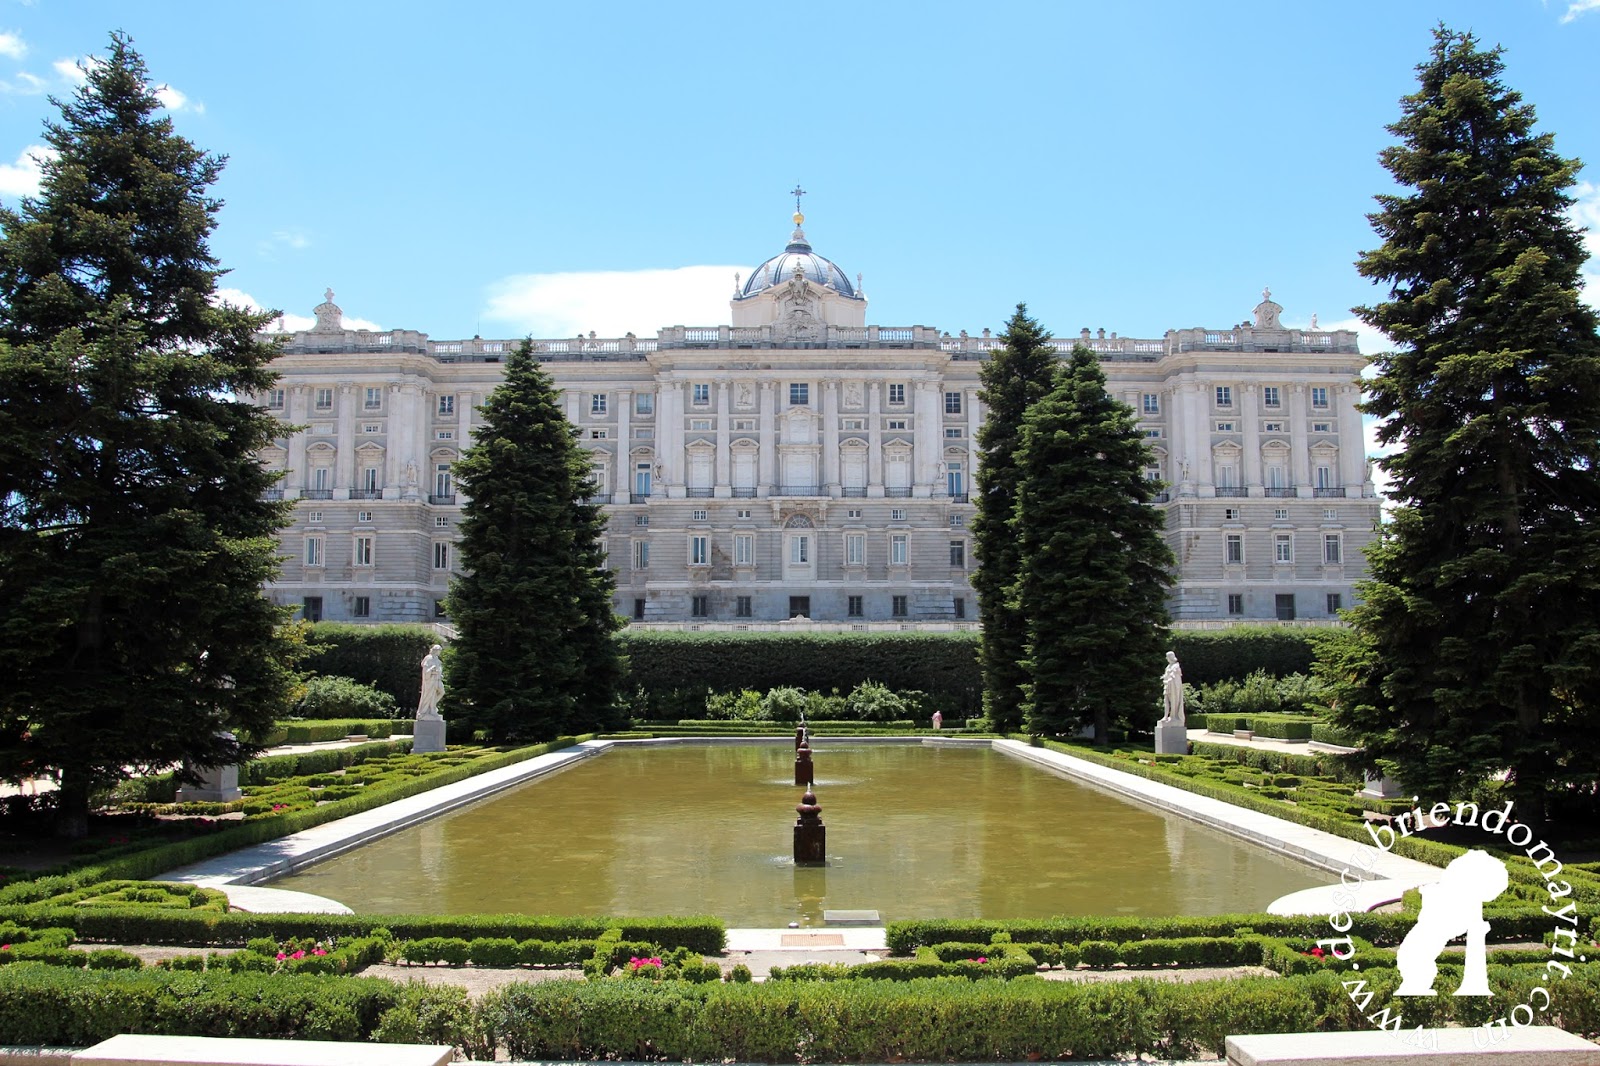 Descubriendo Mayrit Guia de turismo en Madrid Jardines